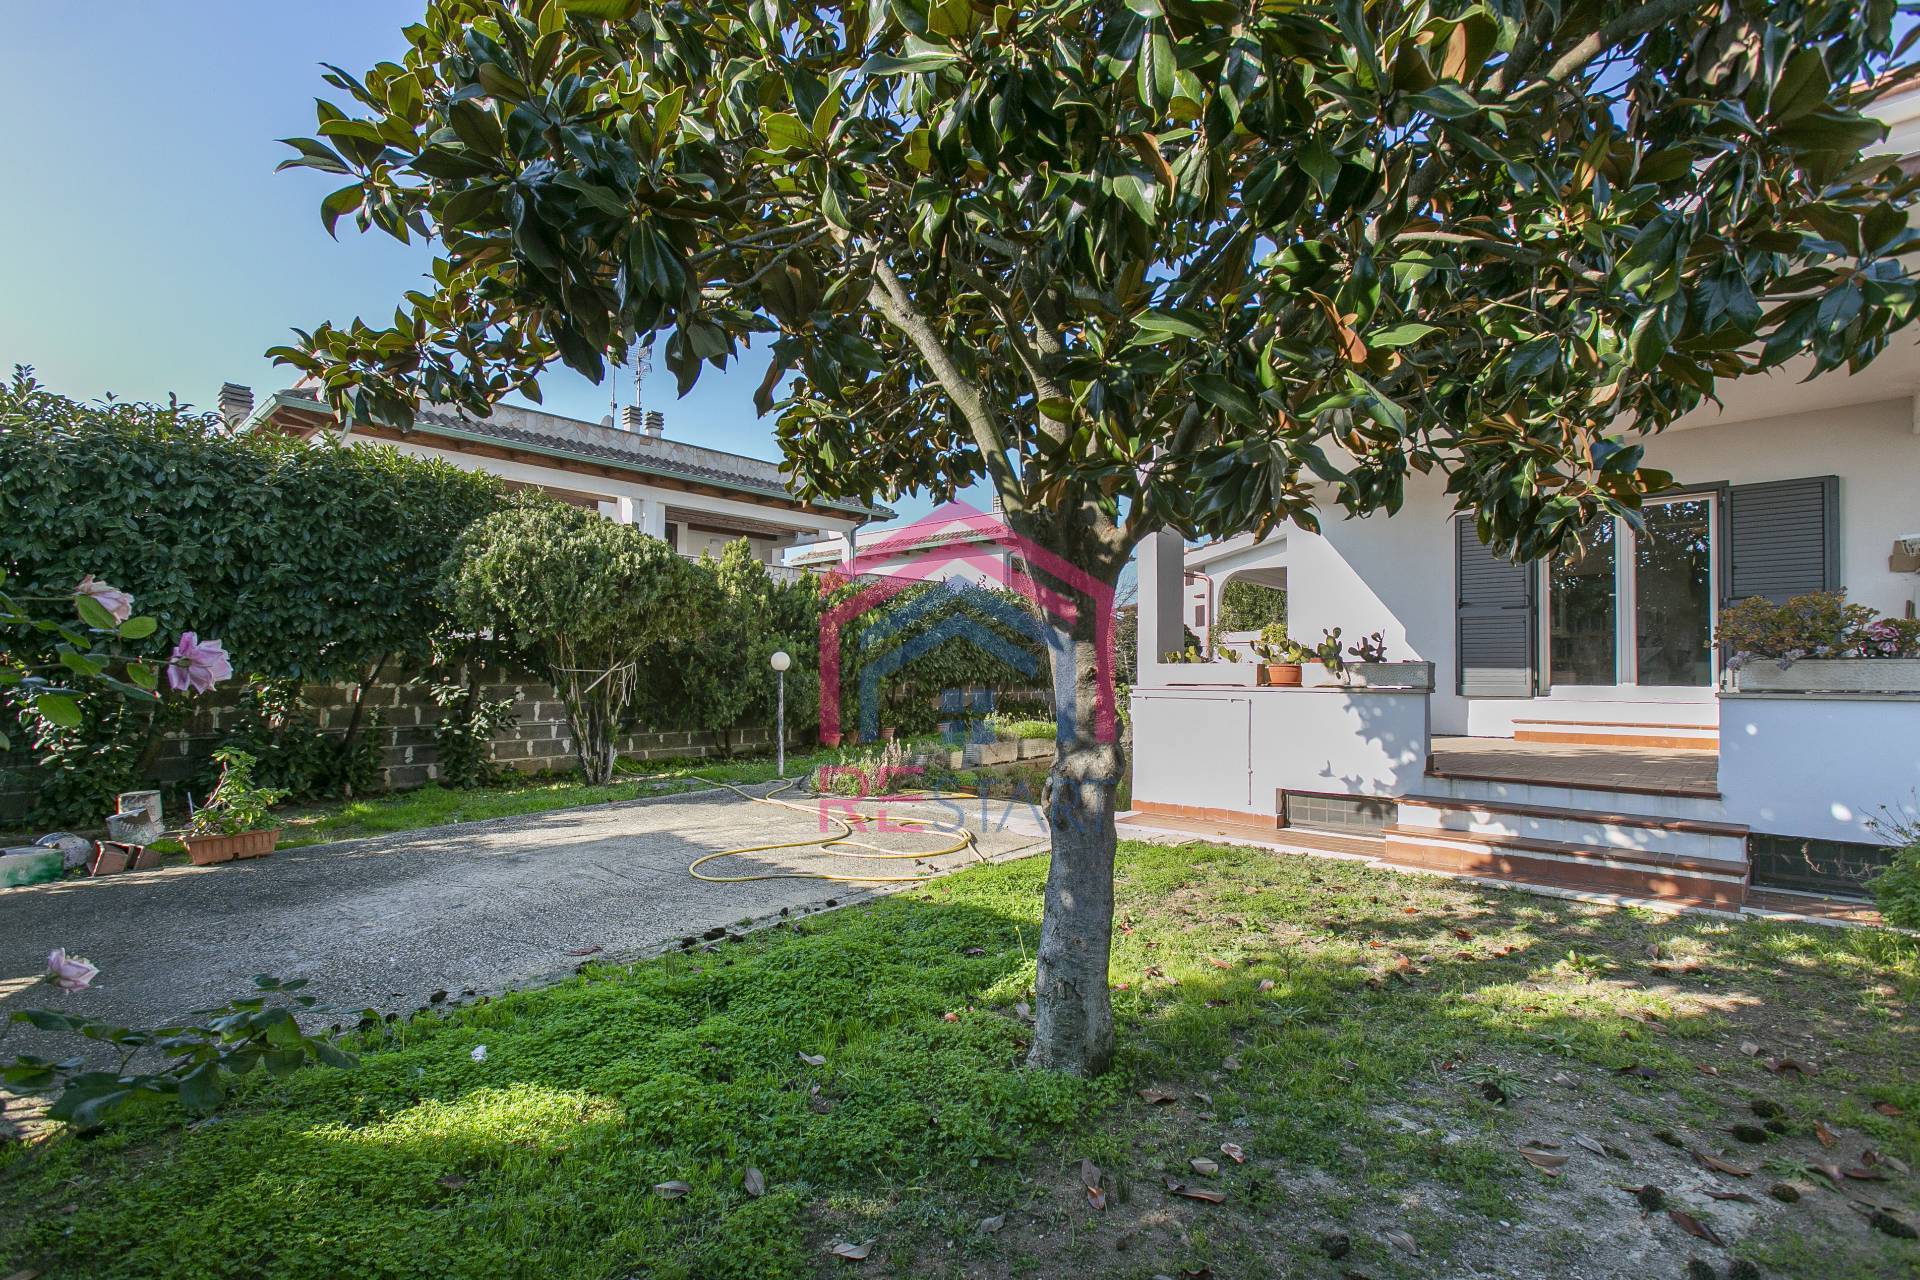 Villa Bifamiliare in vendita a Ardea, 7 locali, zona Località: NuovaFlorida, prezzo € 260.000 | PortaleAgenzieImmobiliari.it